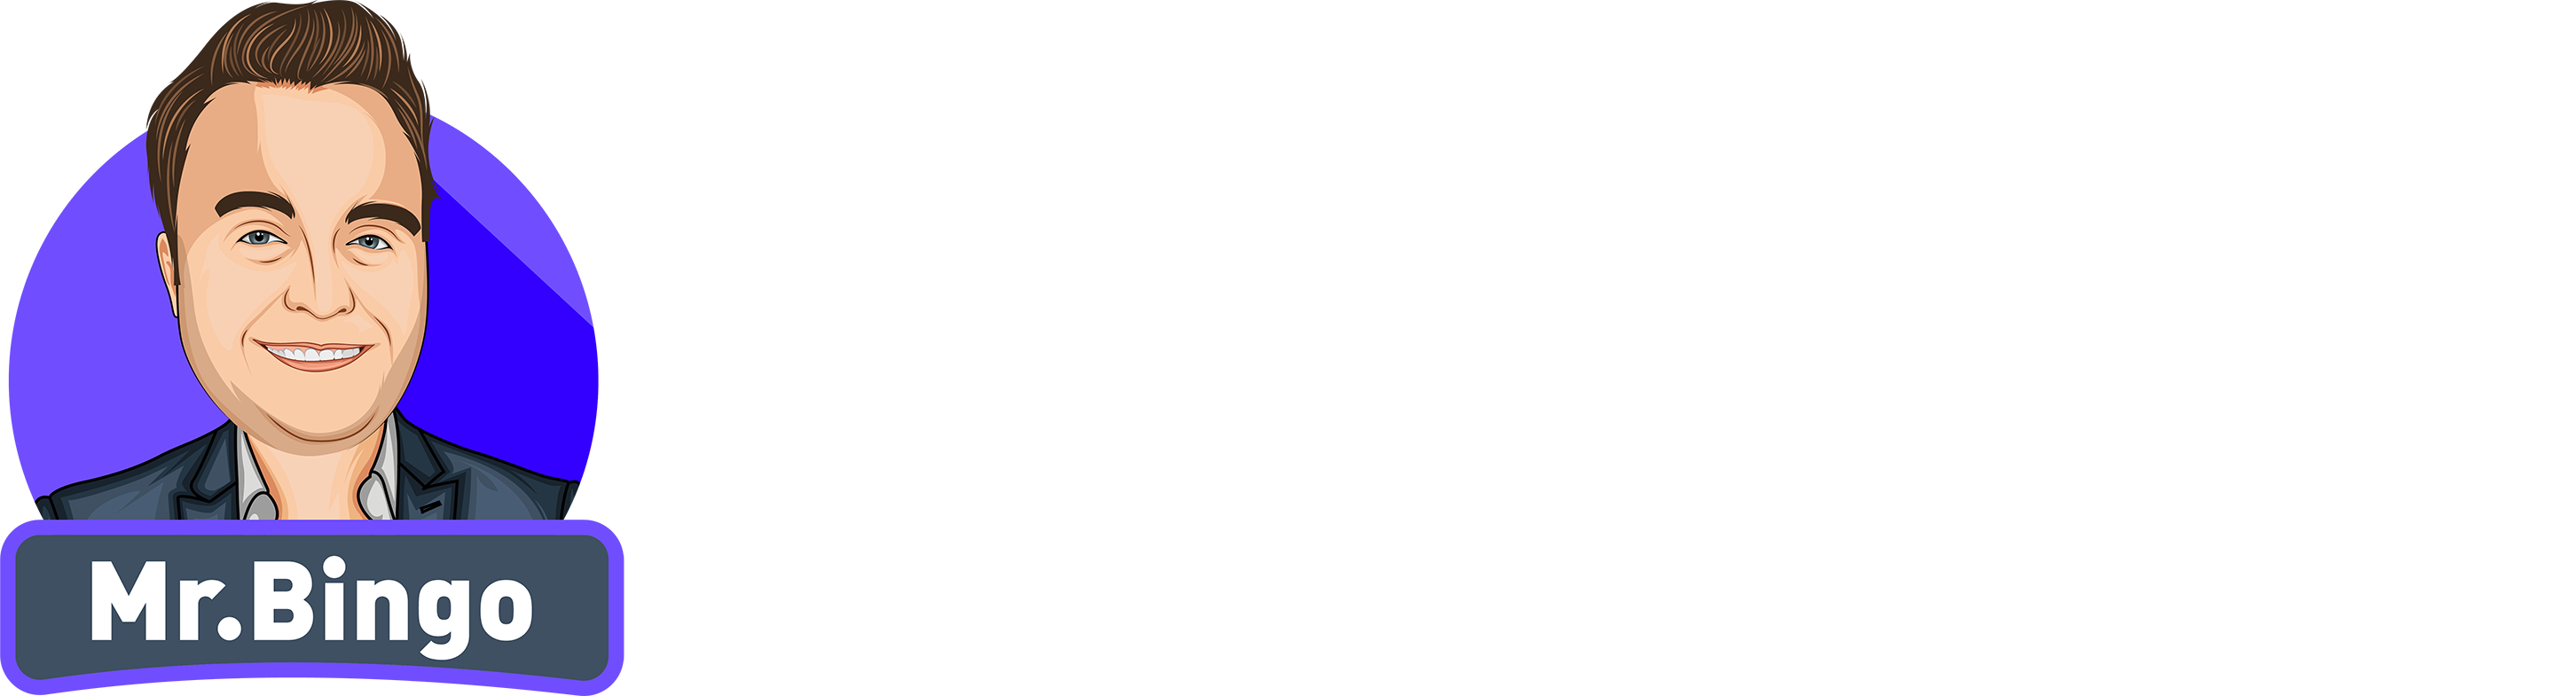 Online Bingo Best Offers - Best Bingo Sites in 2020